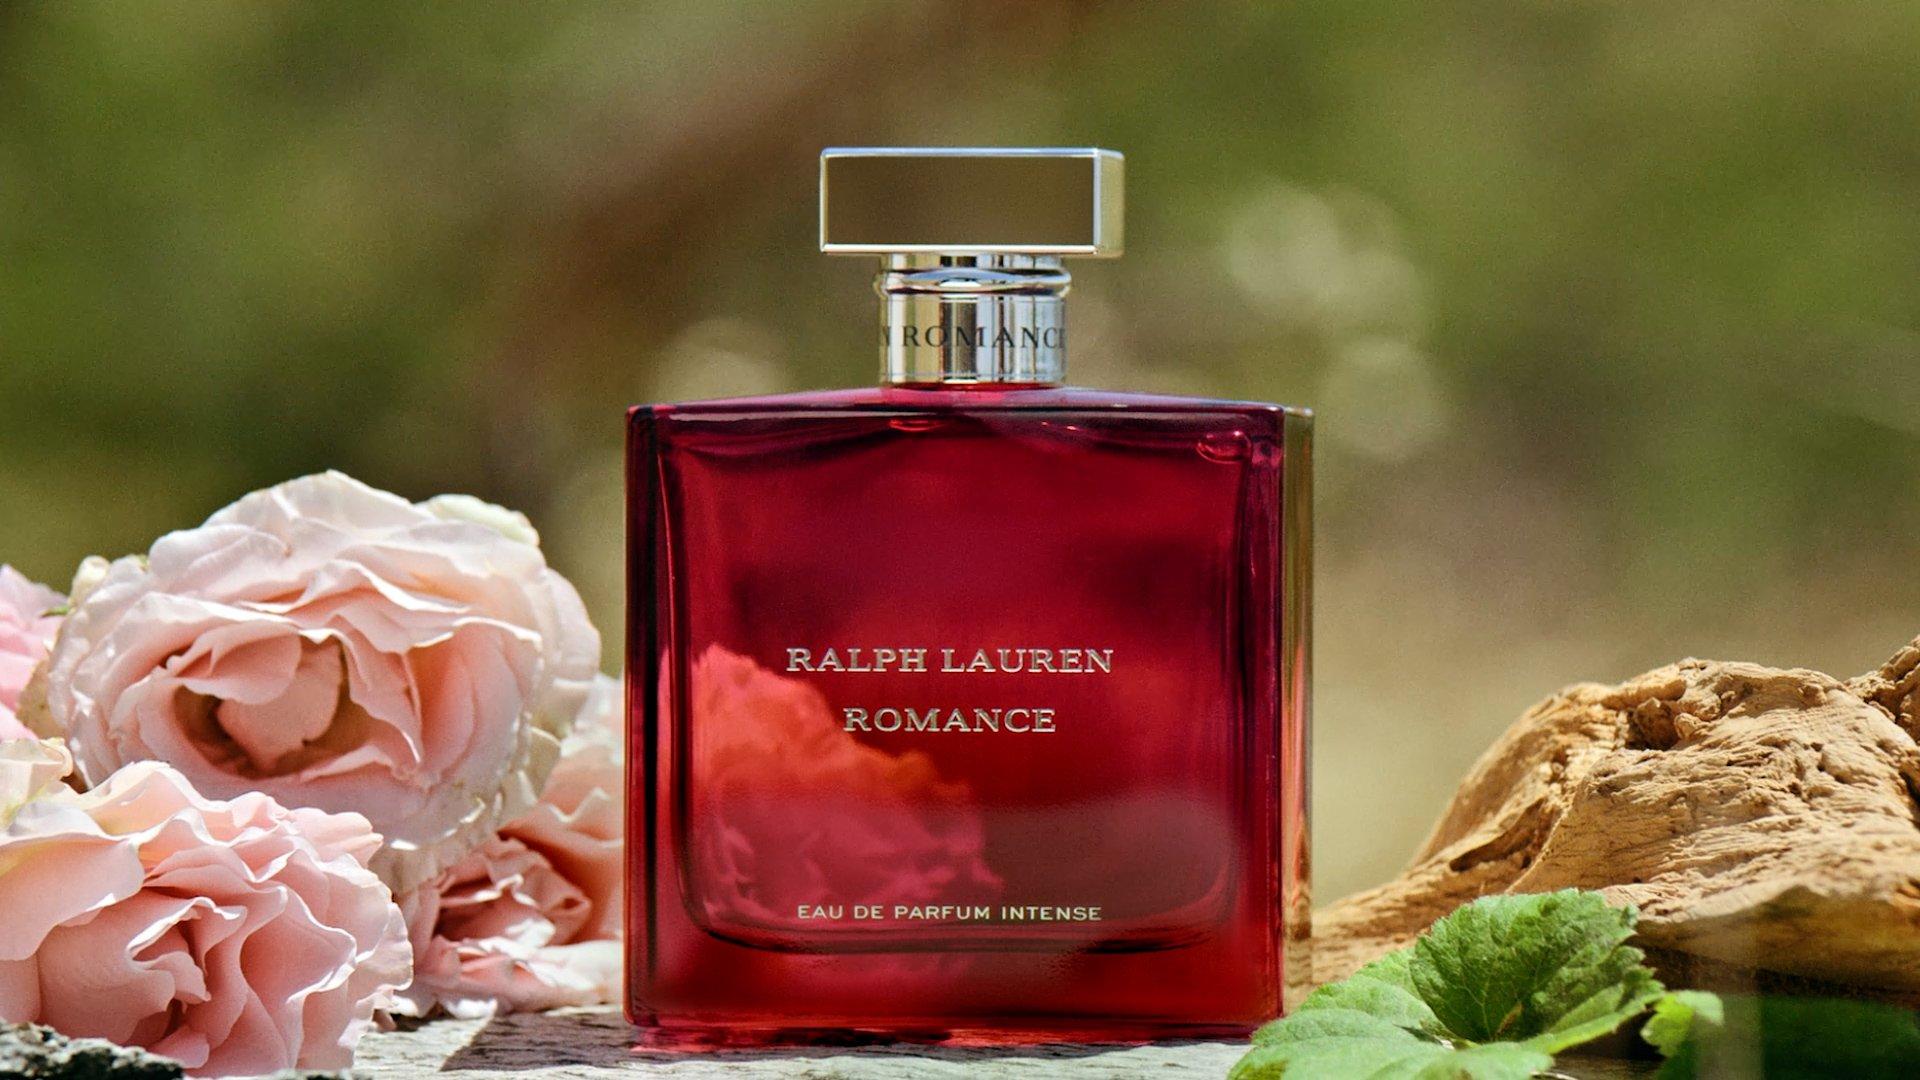 Beyond Romance Eau de Parfum - Ralph Lauren, Ulta Beauty